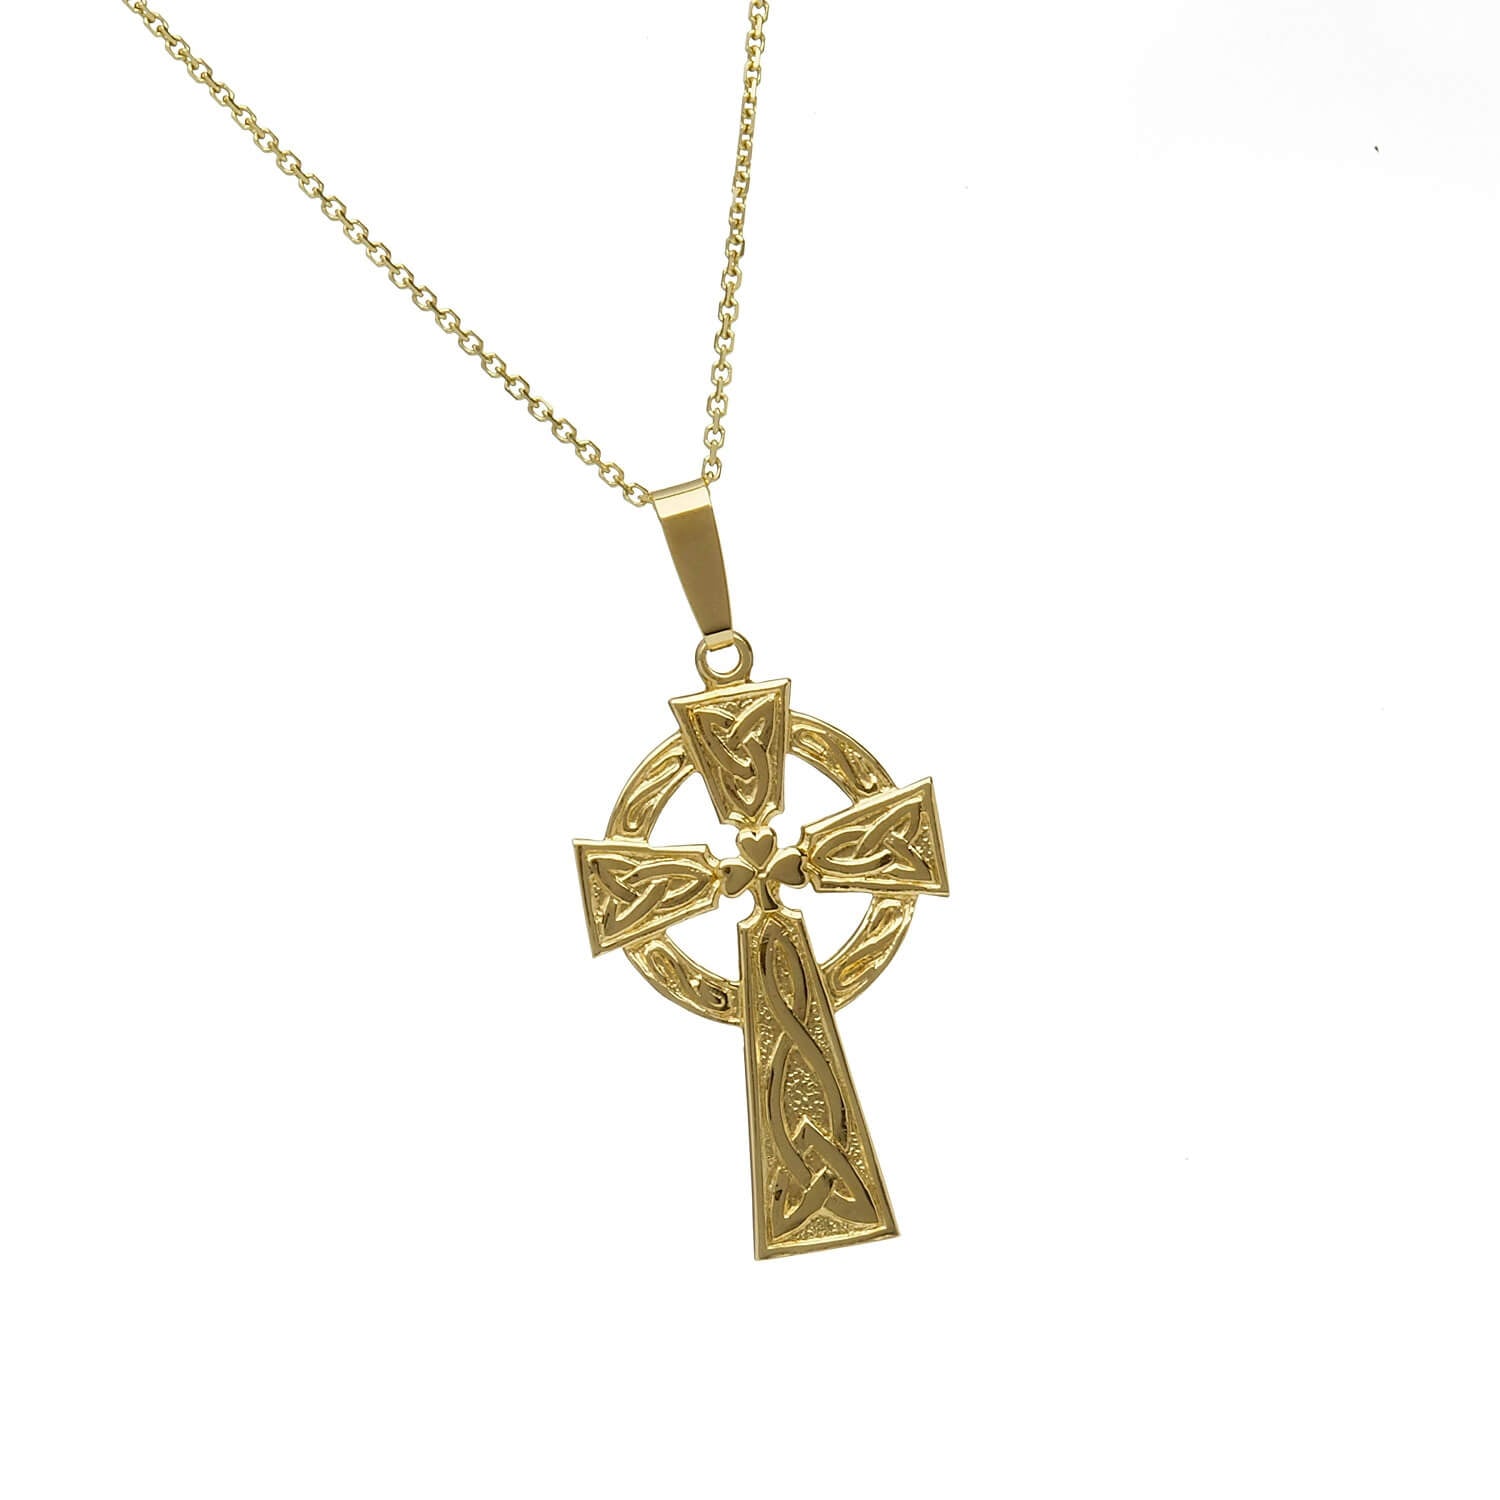 10k Gold Celtic Cross Necklace with Shamrock Design